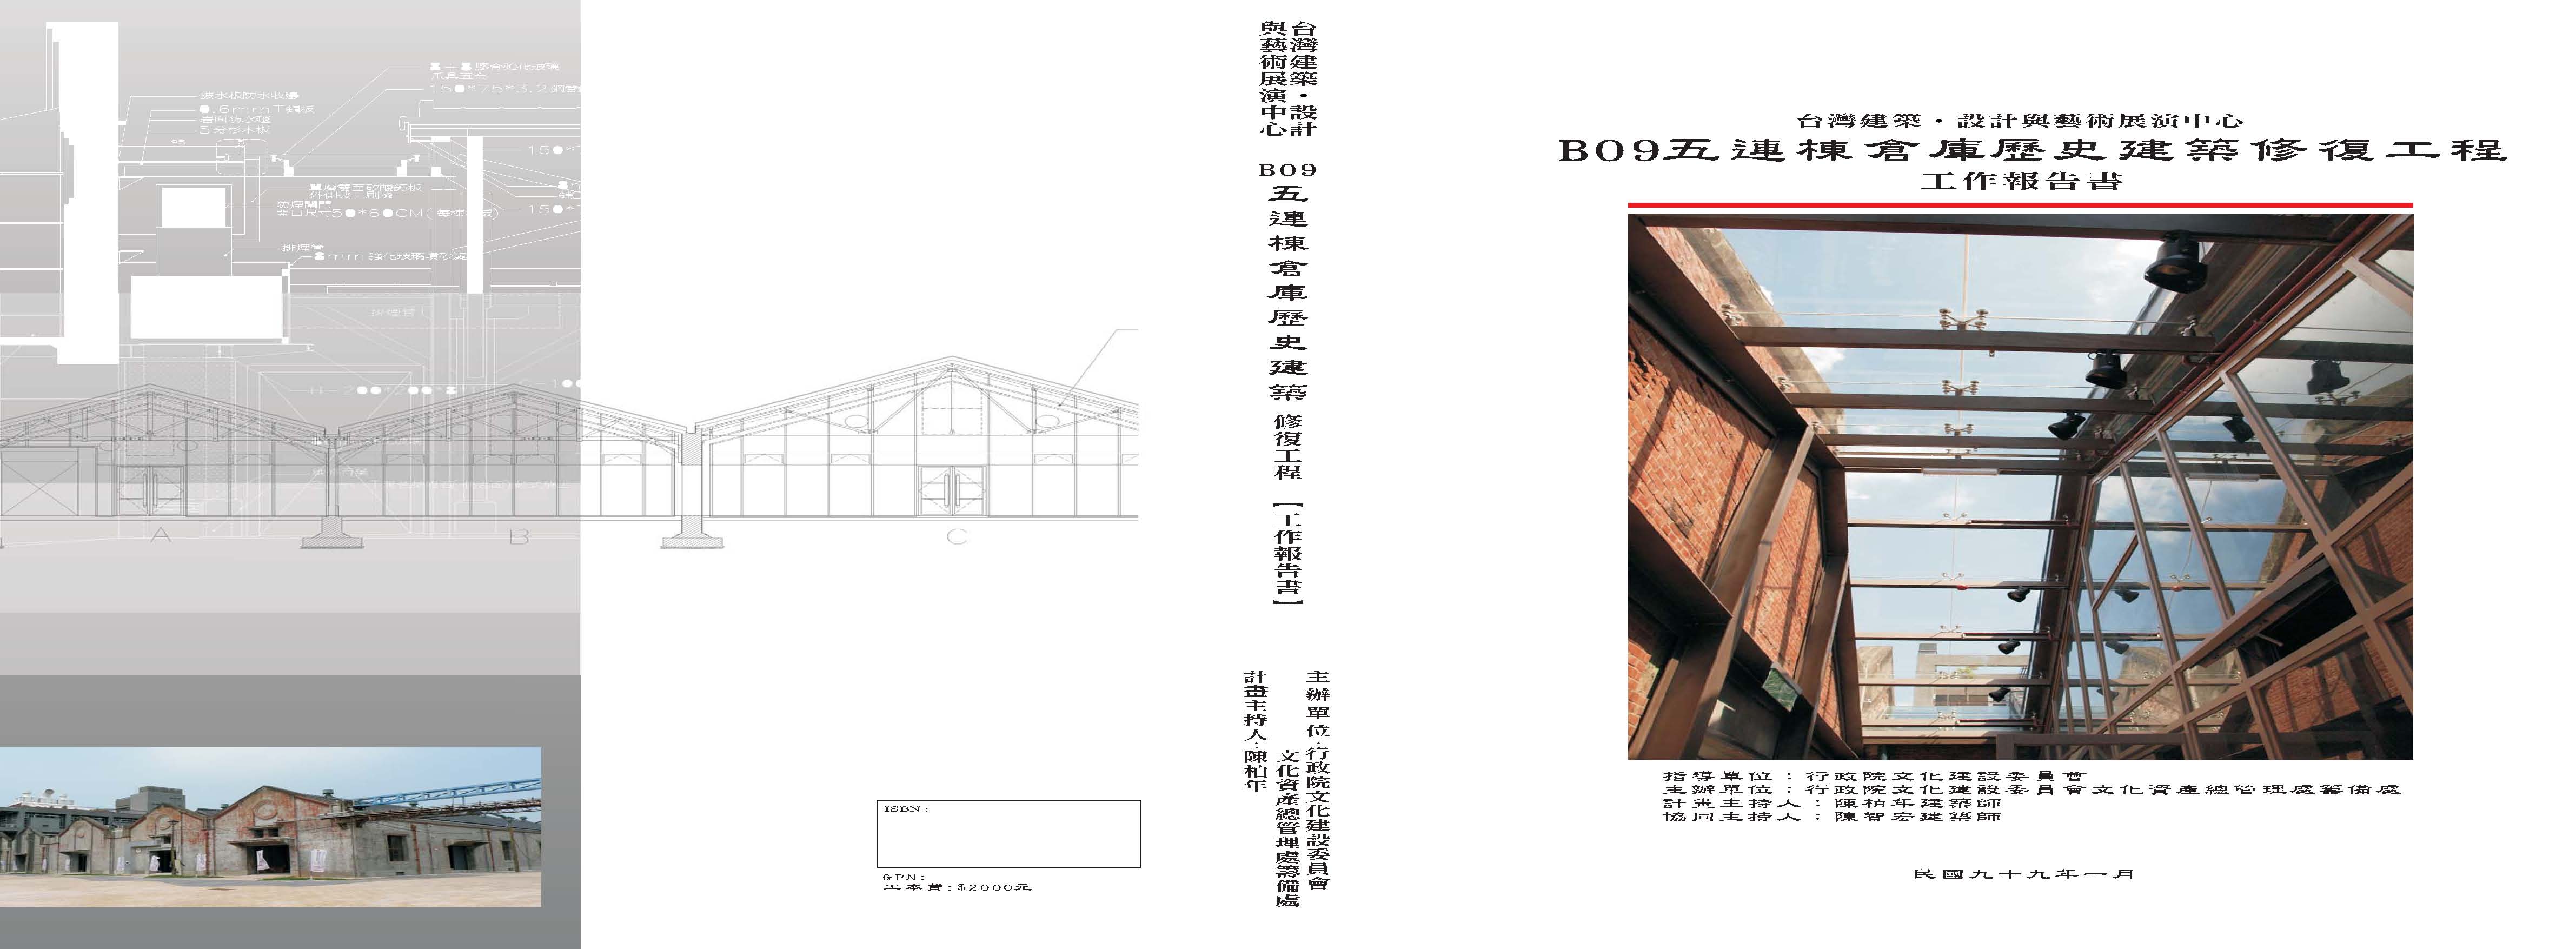 「台灣建築‧設計與藝術展演中心B09五連棟歷史建築修復工程」施工紀錄工作報告書